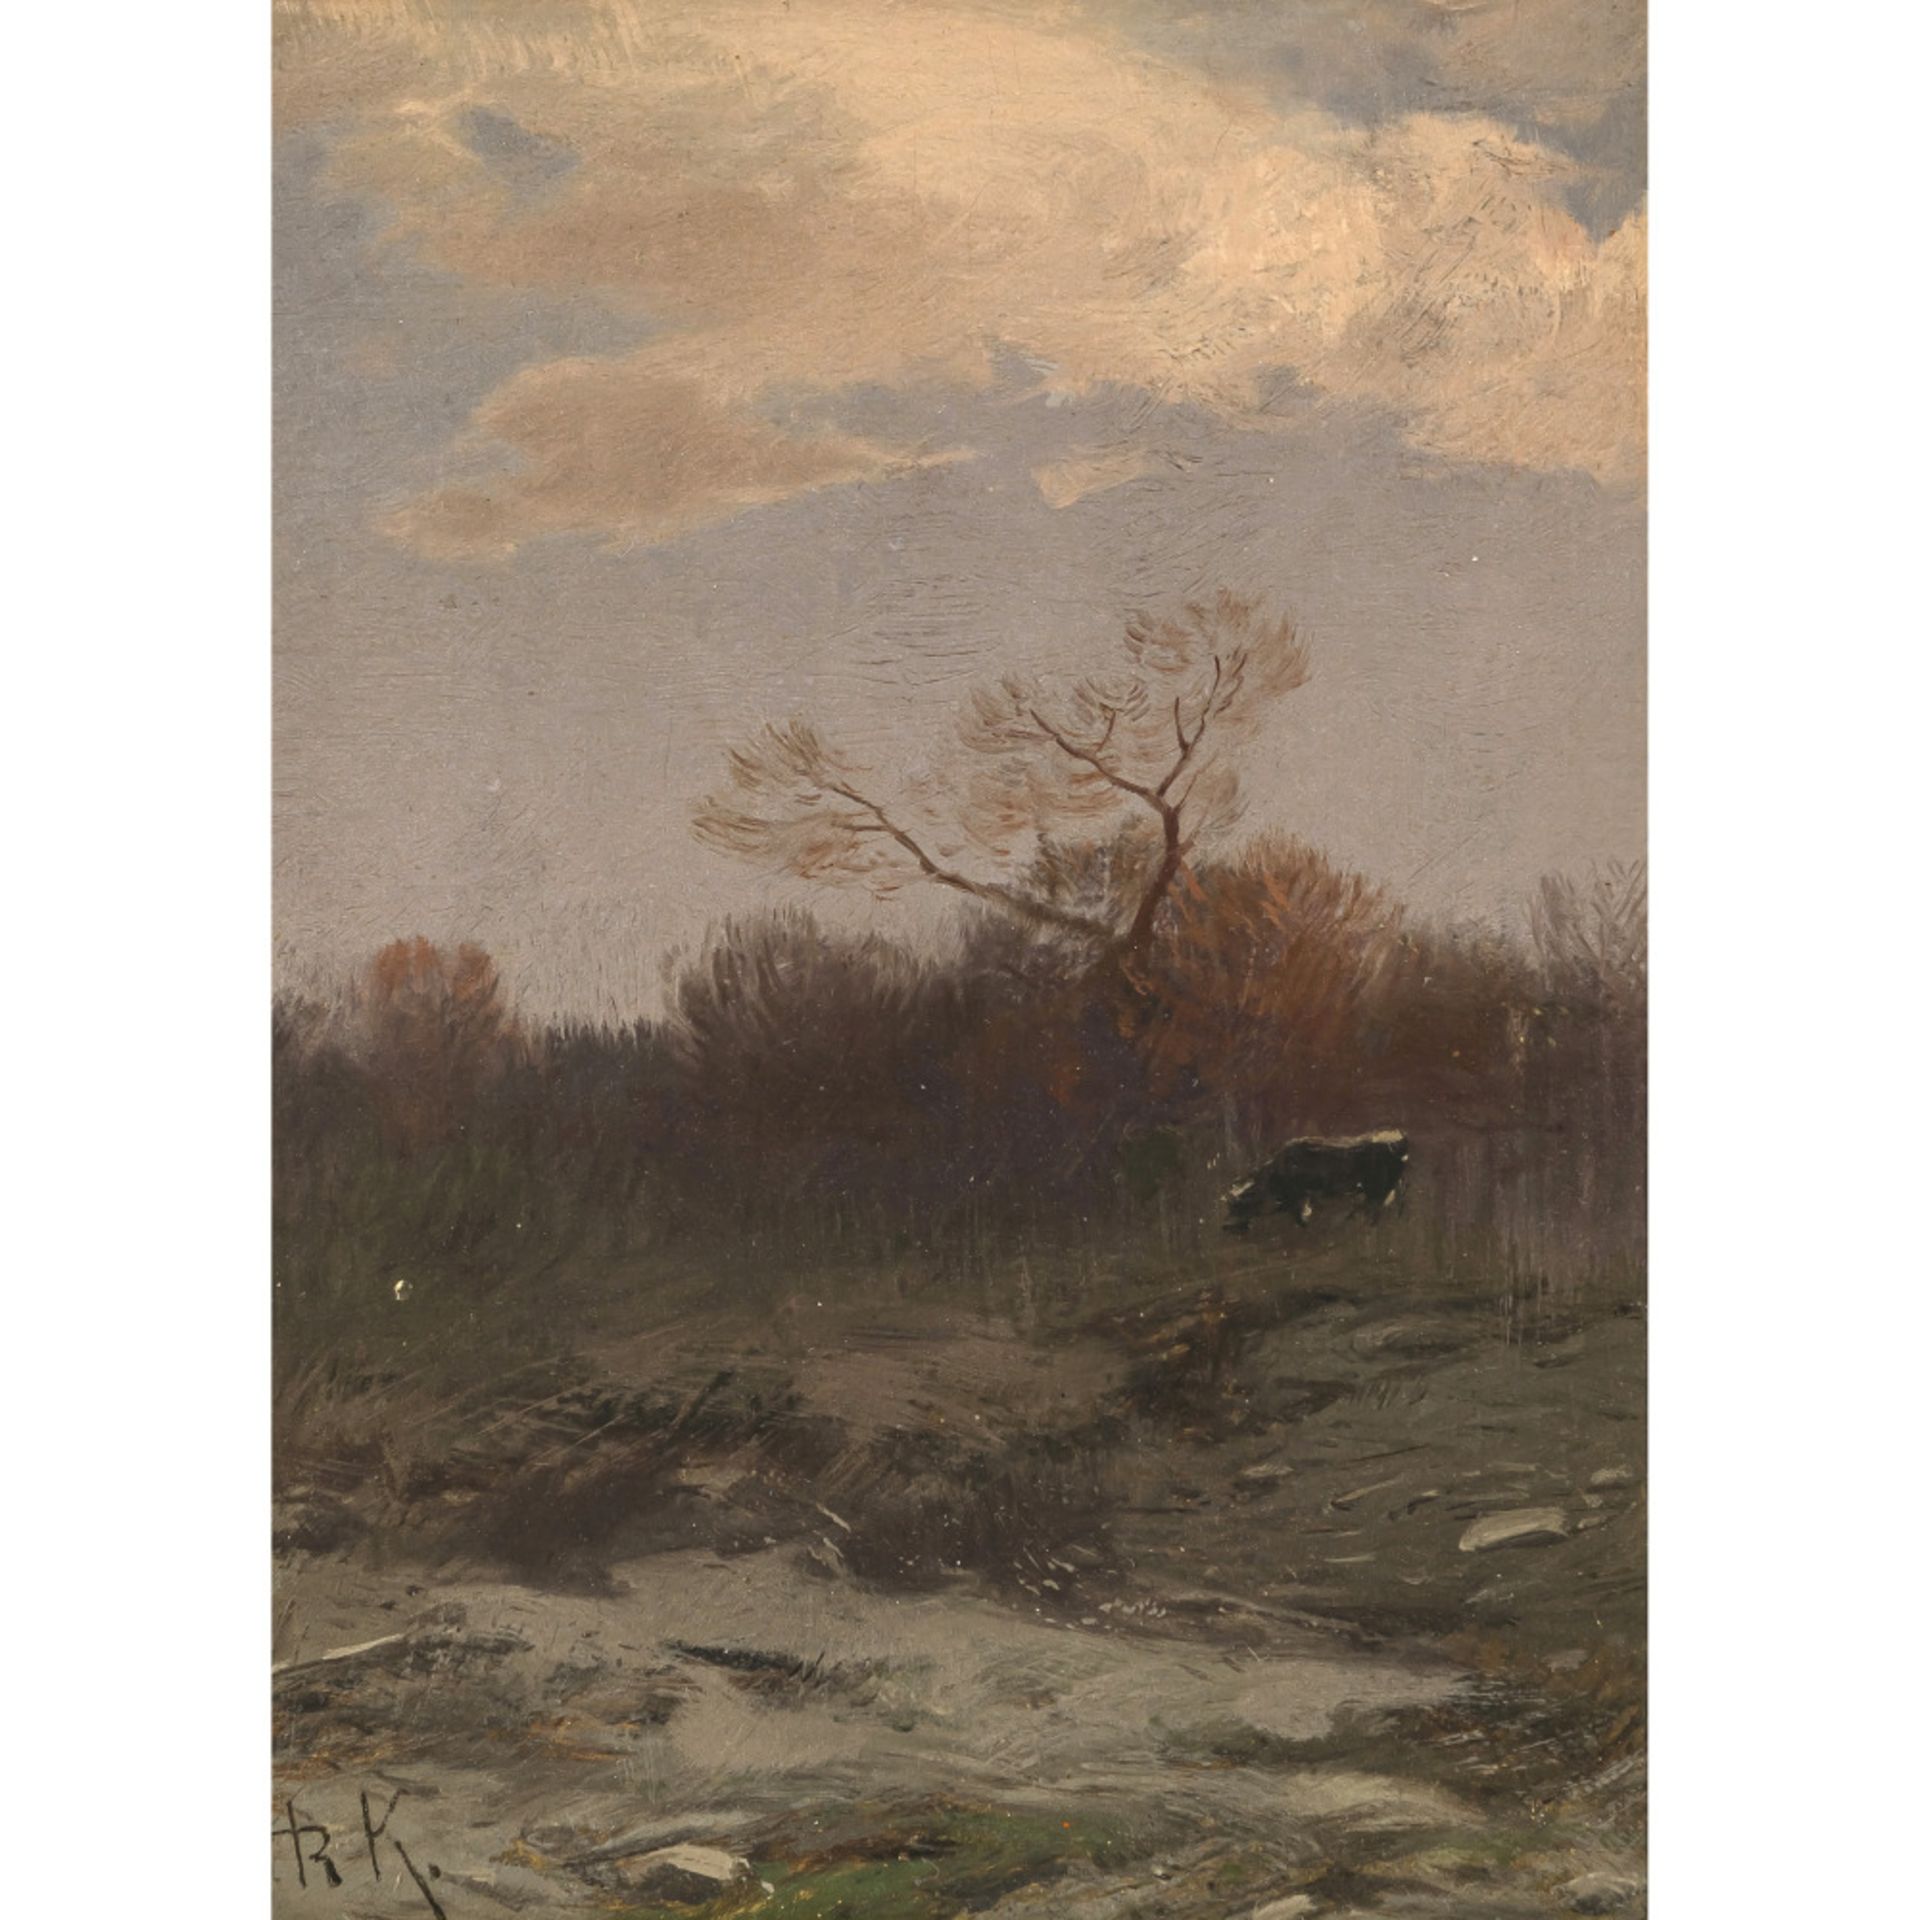 Roman Kochanowski - Autumn landscape with cattle